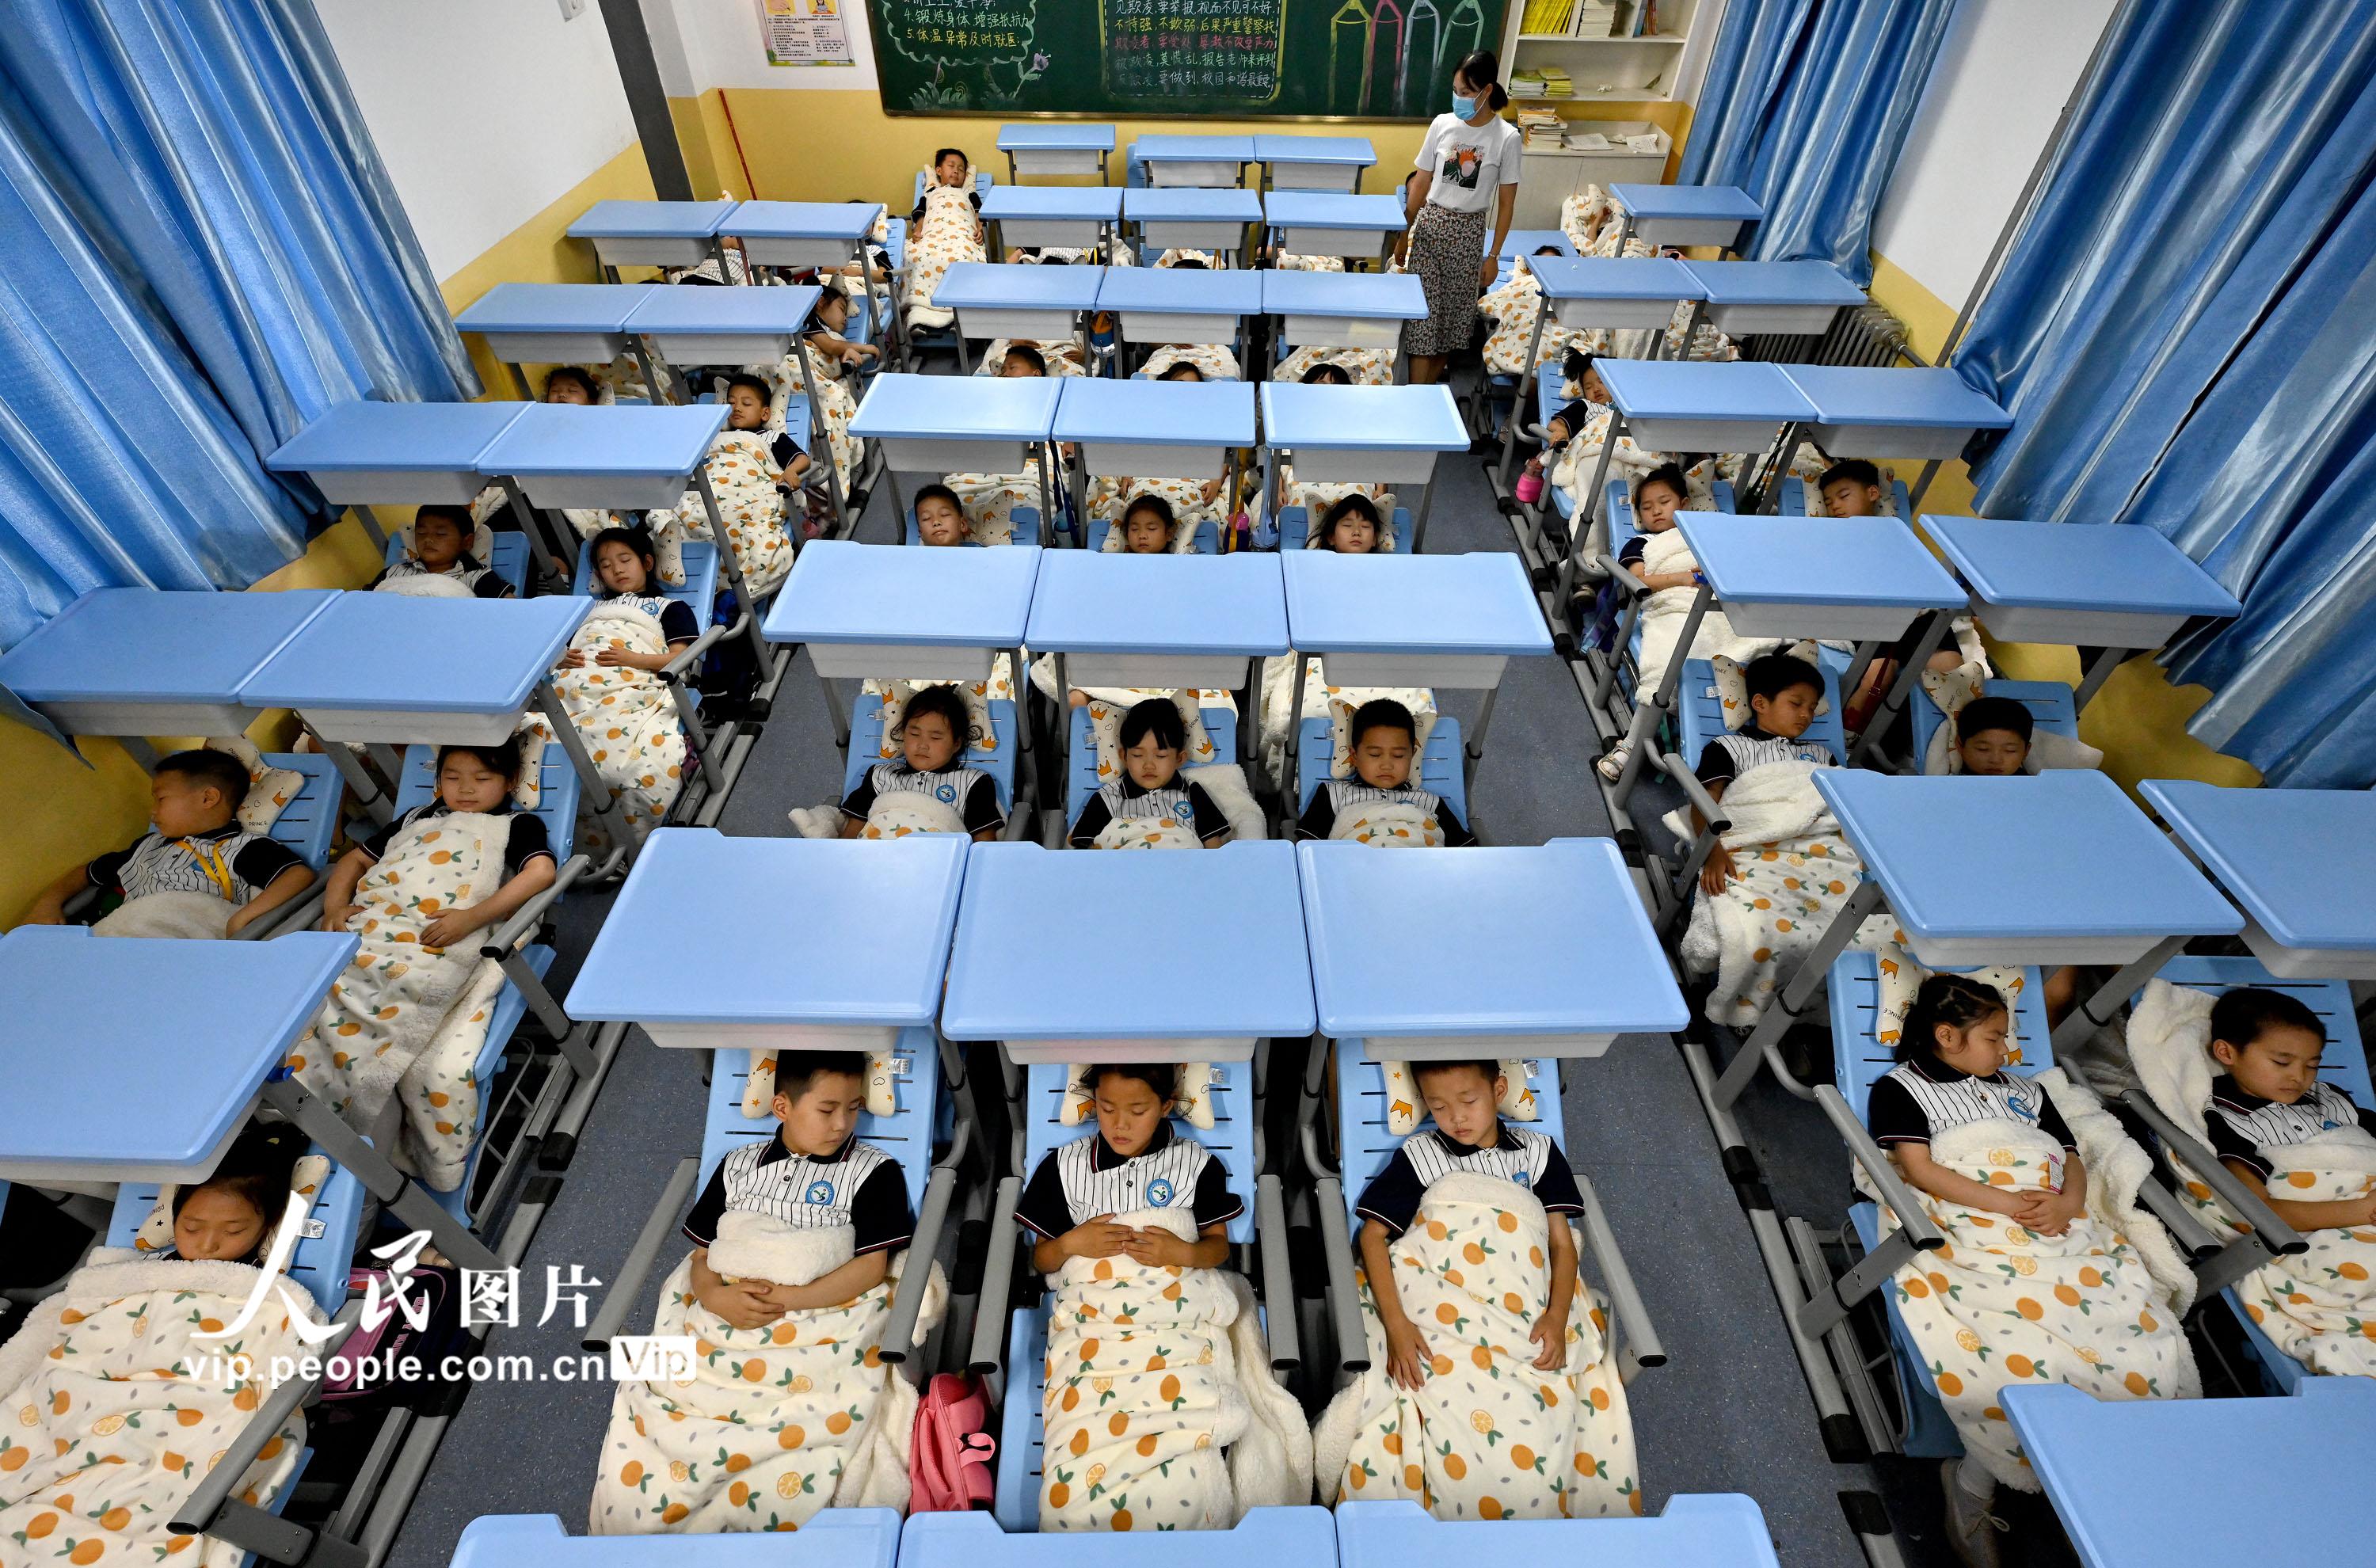 河北邯鄲一小學引入“午休課桌椅” 學生午休從“趴睡”變“躺睡”